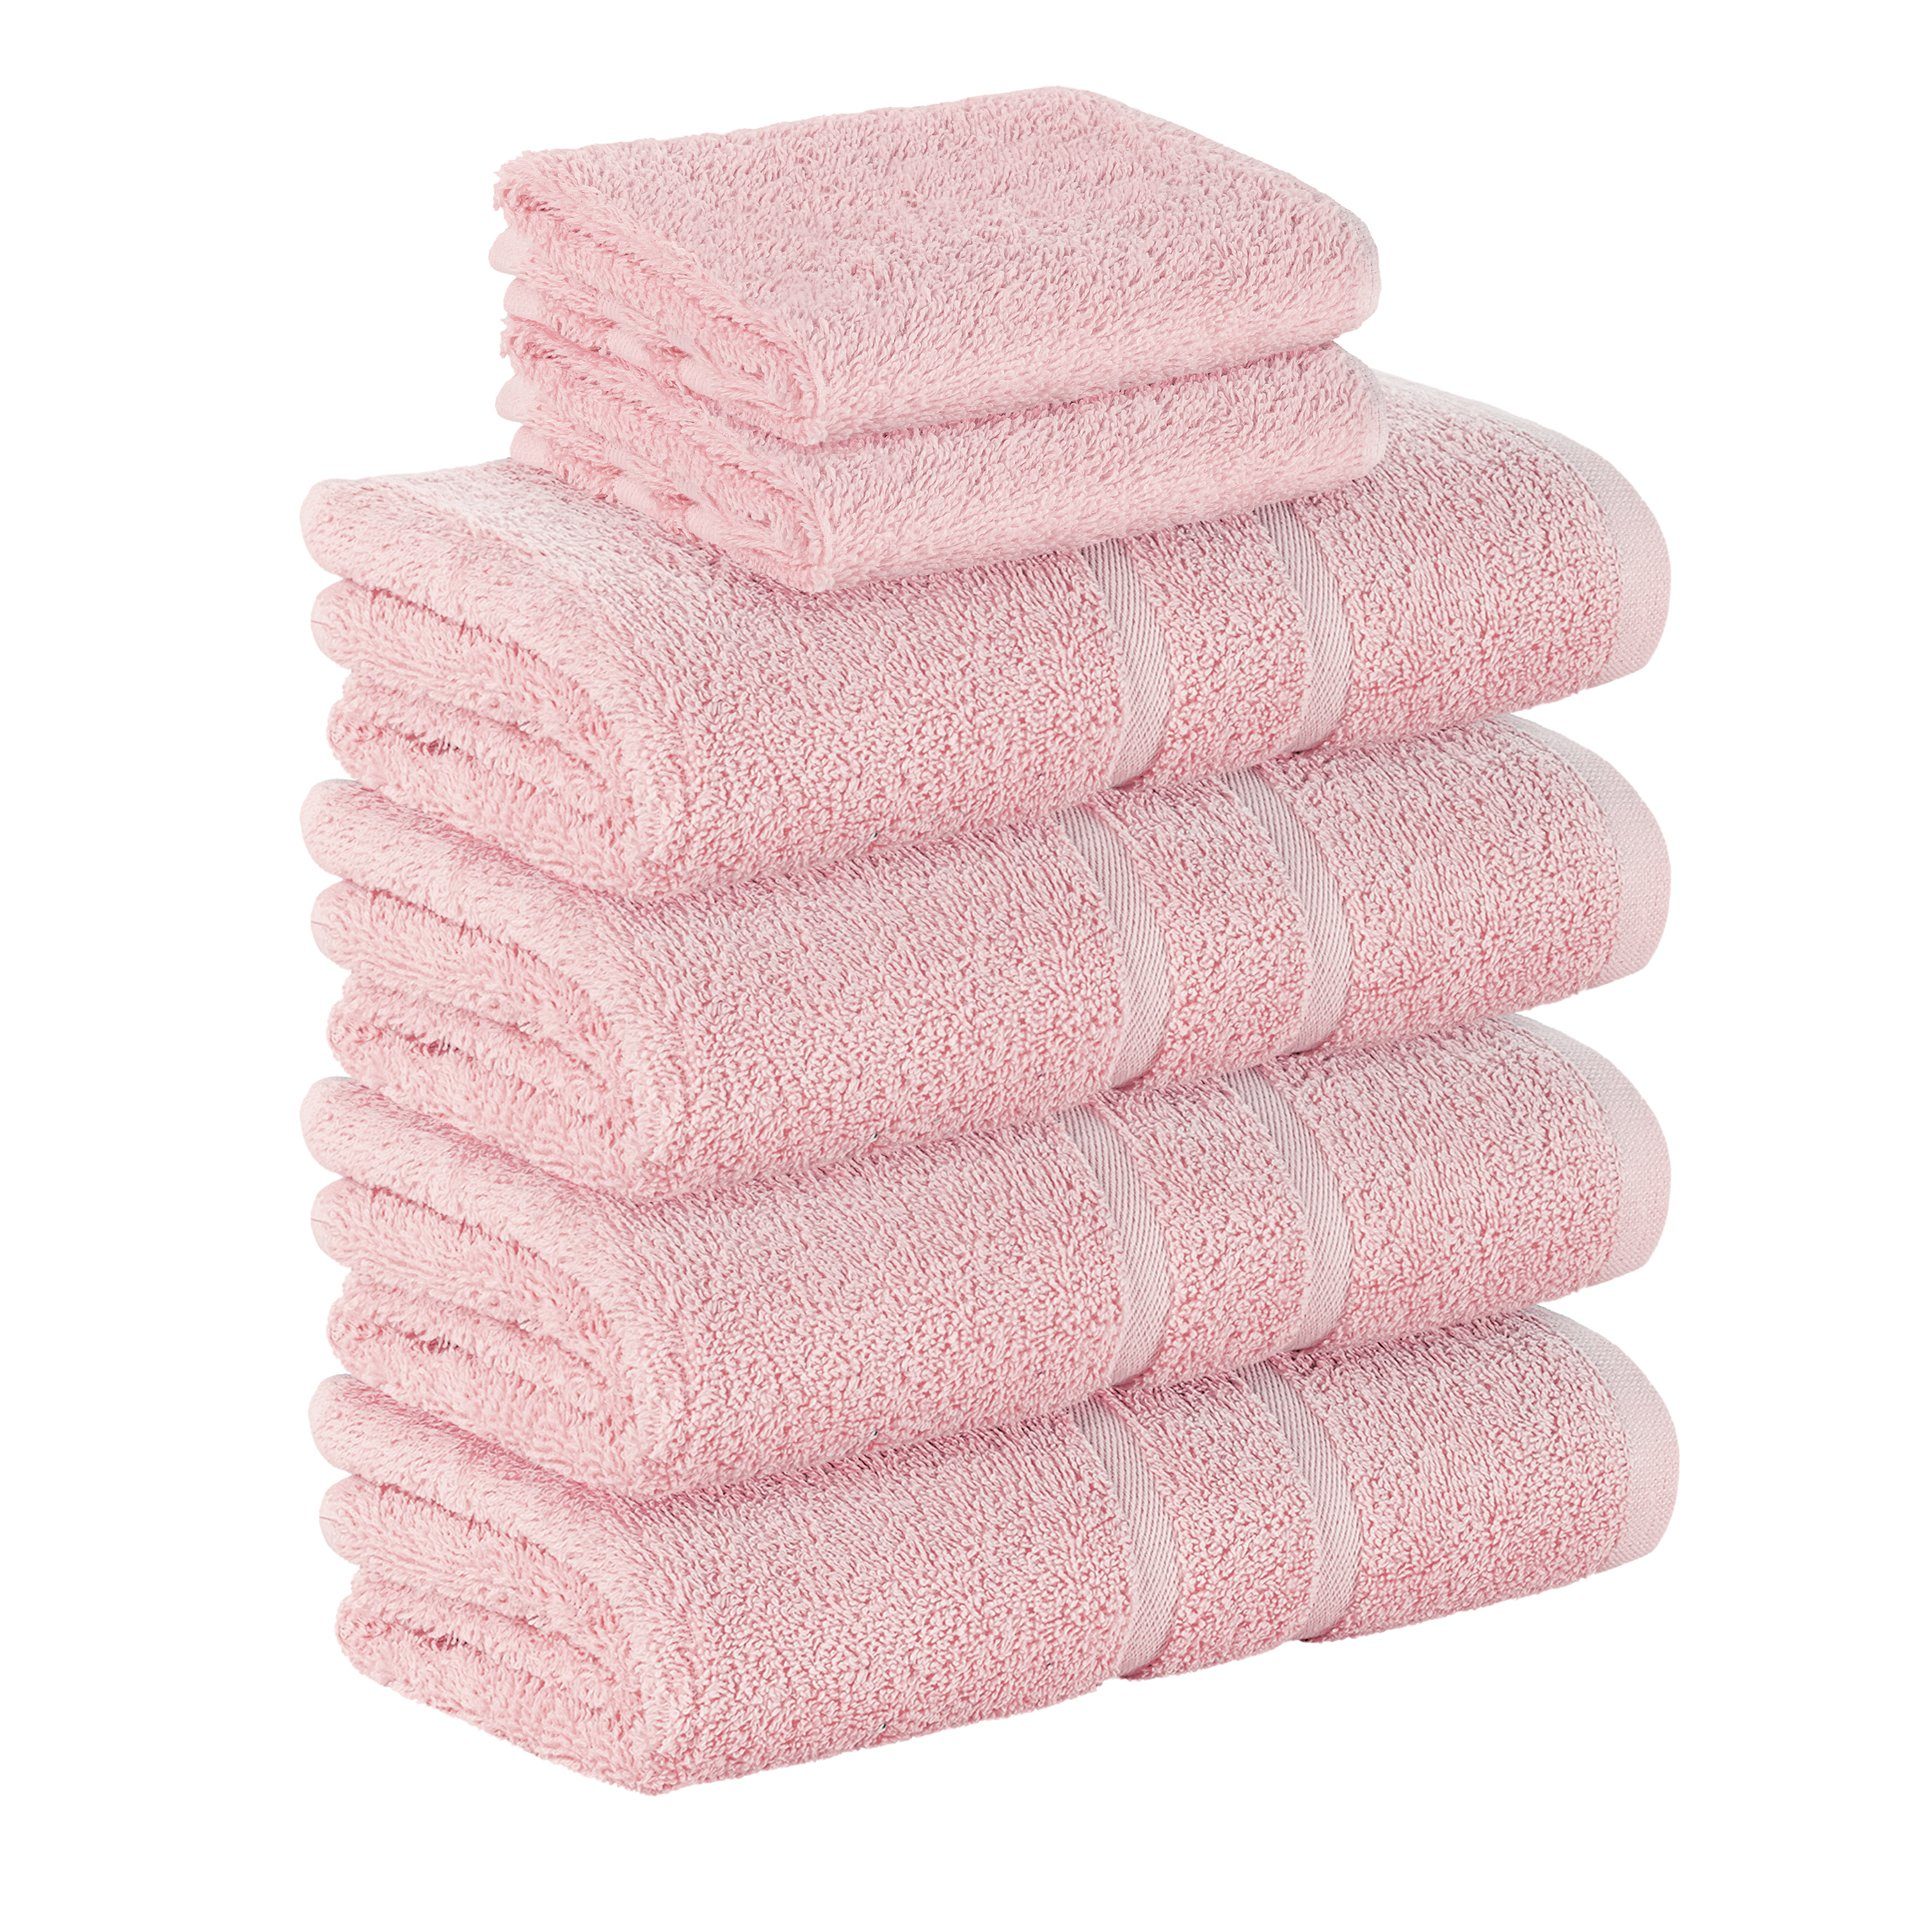 Handtuch-Set in rosa online kaufen | OTTO